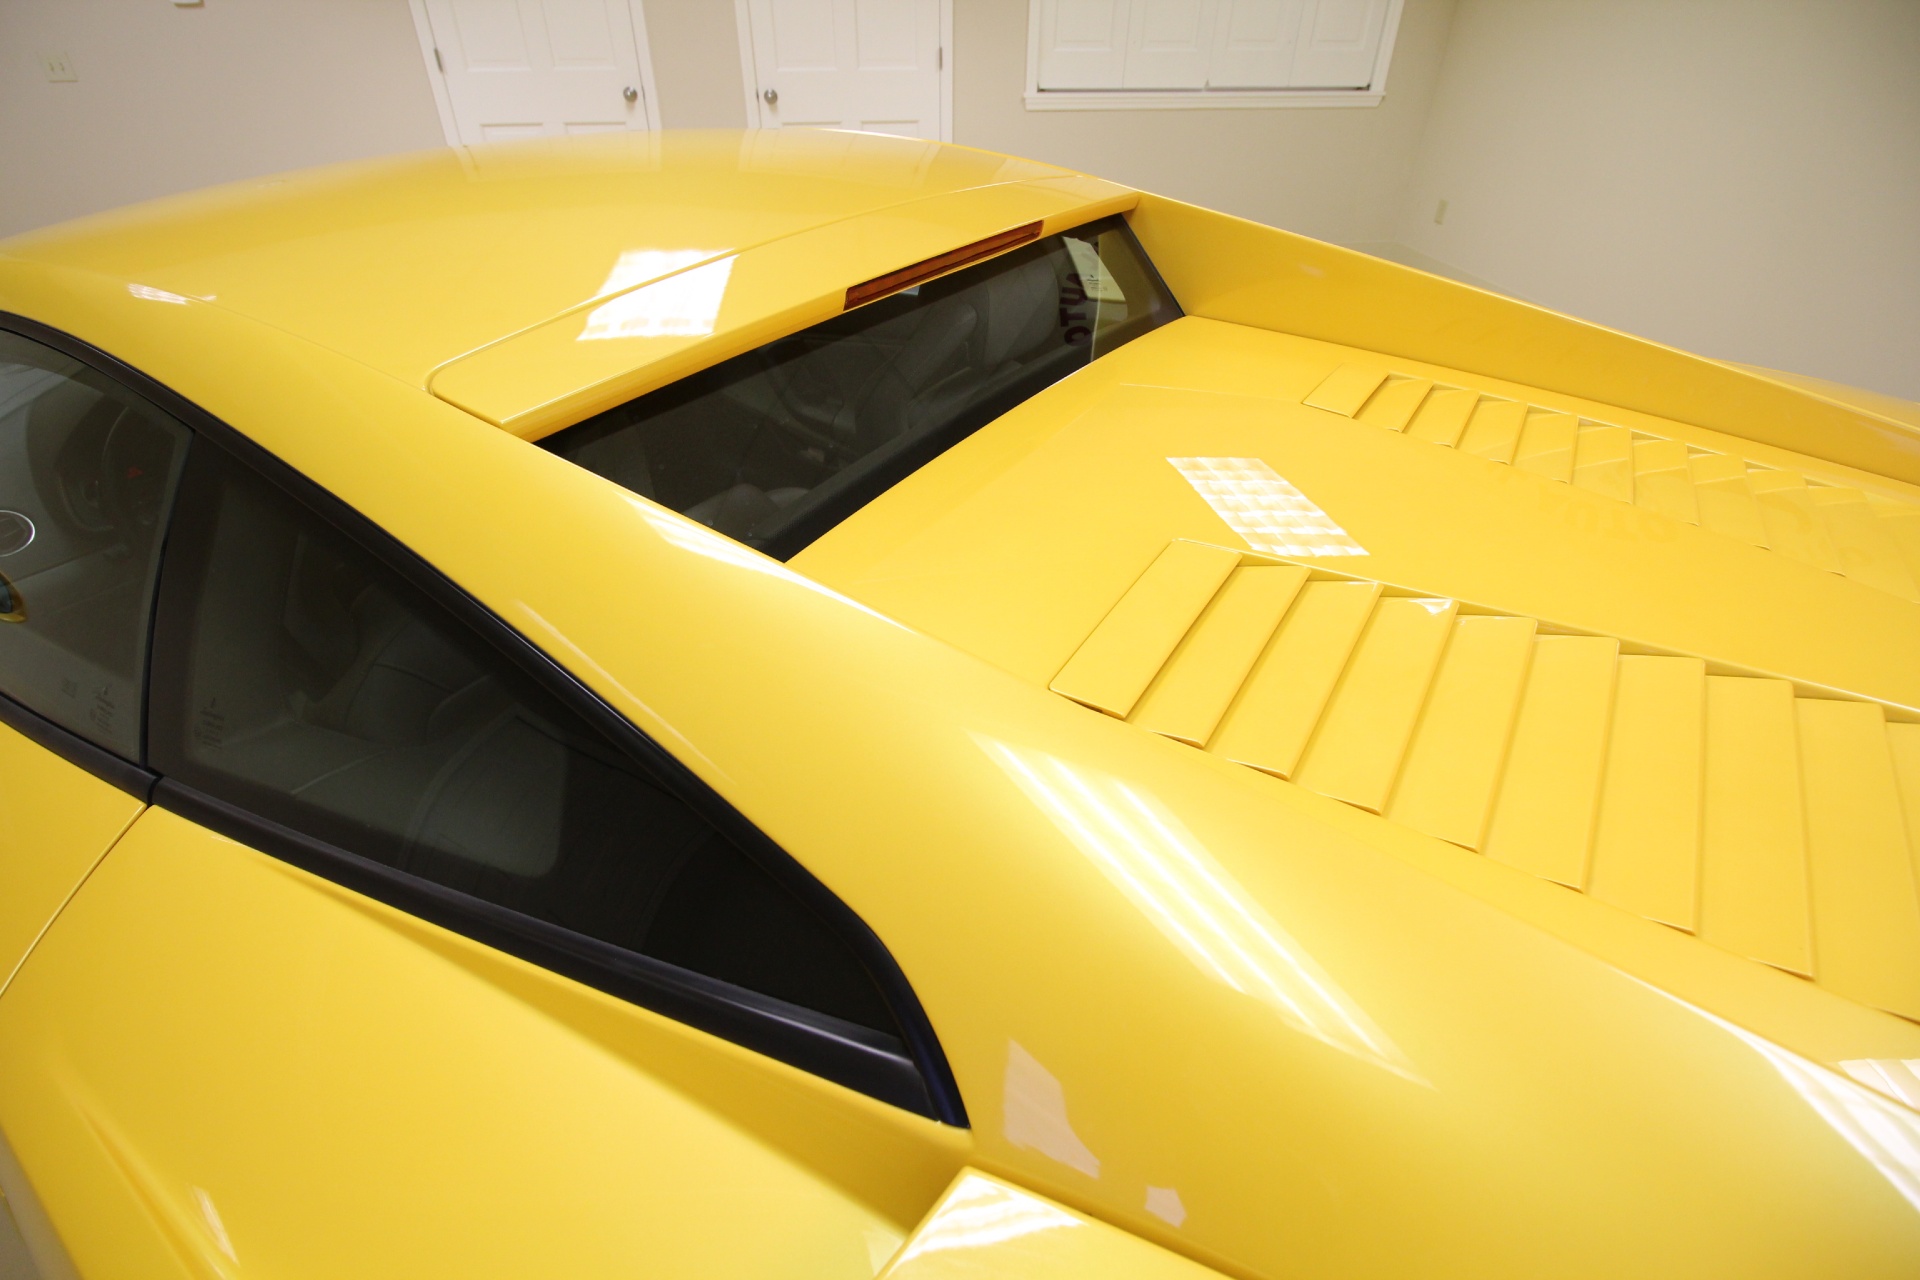 Used 2004 Yellow Lamborghini Gallardo SUPERB CONDITION,SUPER CLEAN | Albany, NY